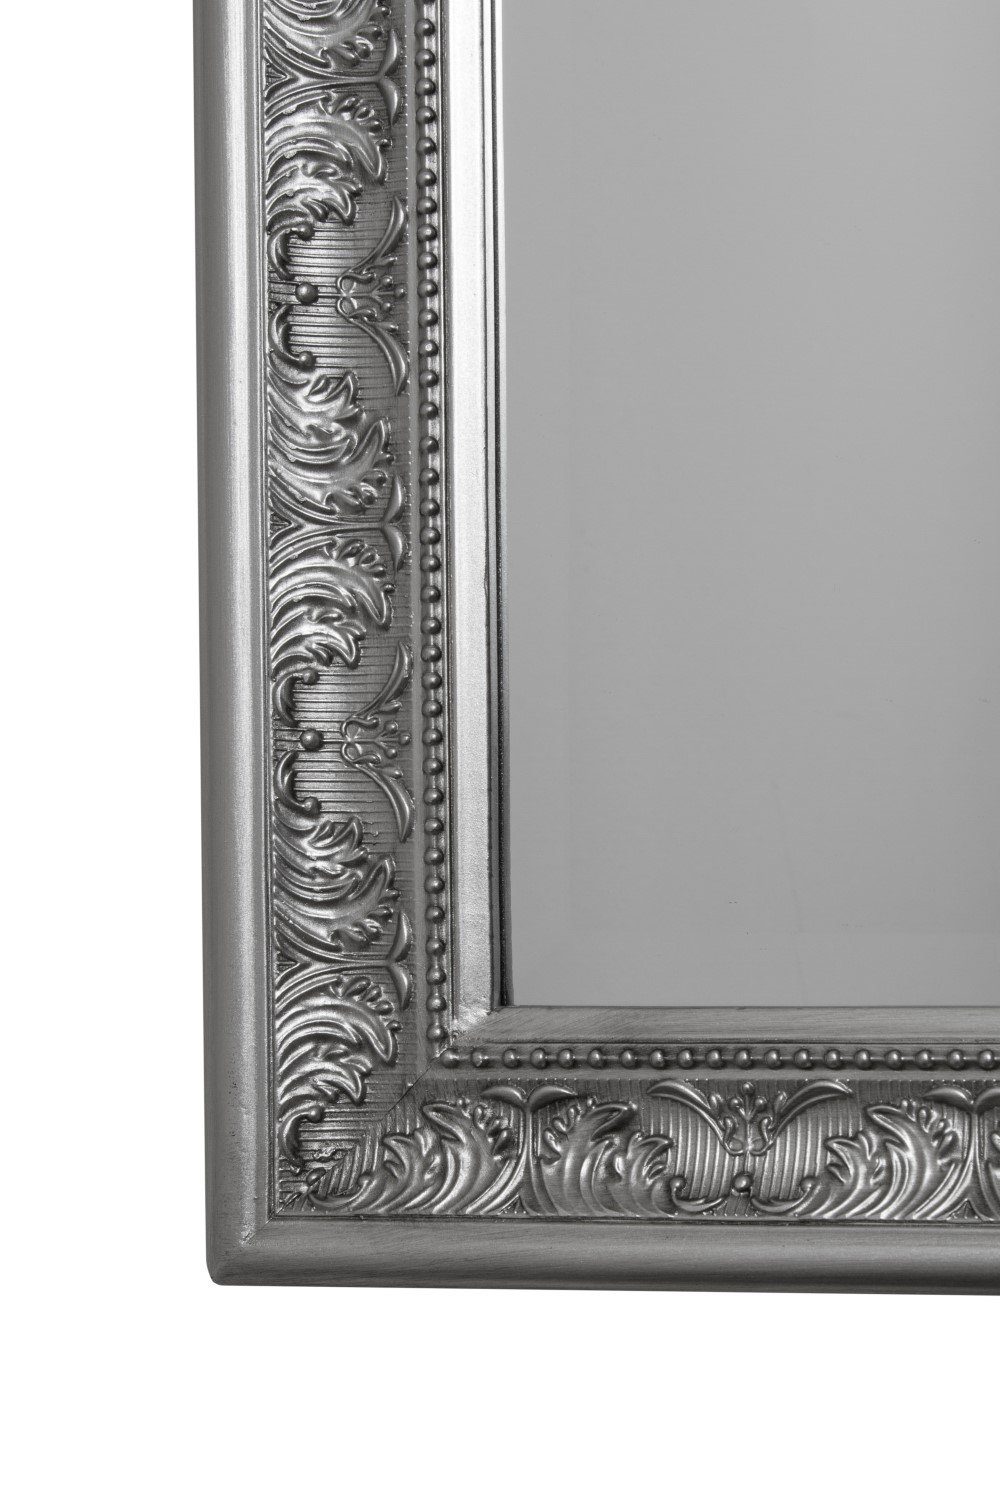 - elbmöbel Spiegel 62x52x7 Spiegel: Antik Barock cm silber Wandspiegel Wandspiegel Ganzkörperspiegel, Facettenschliff Rahmen Barock Stil Wandspiegel mit Ankleidespiegel